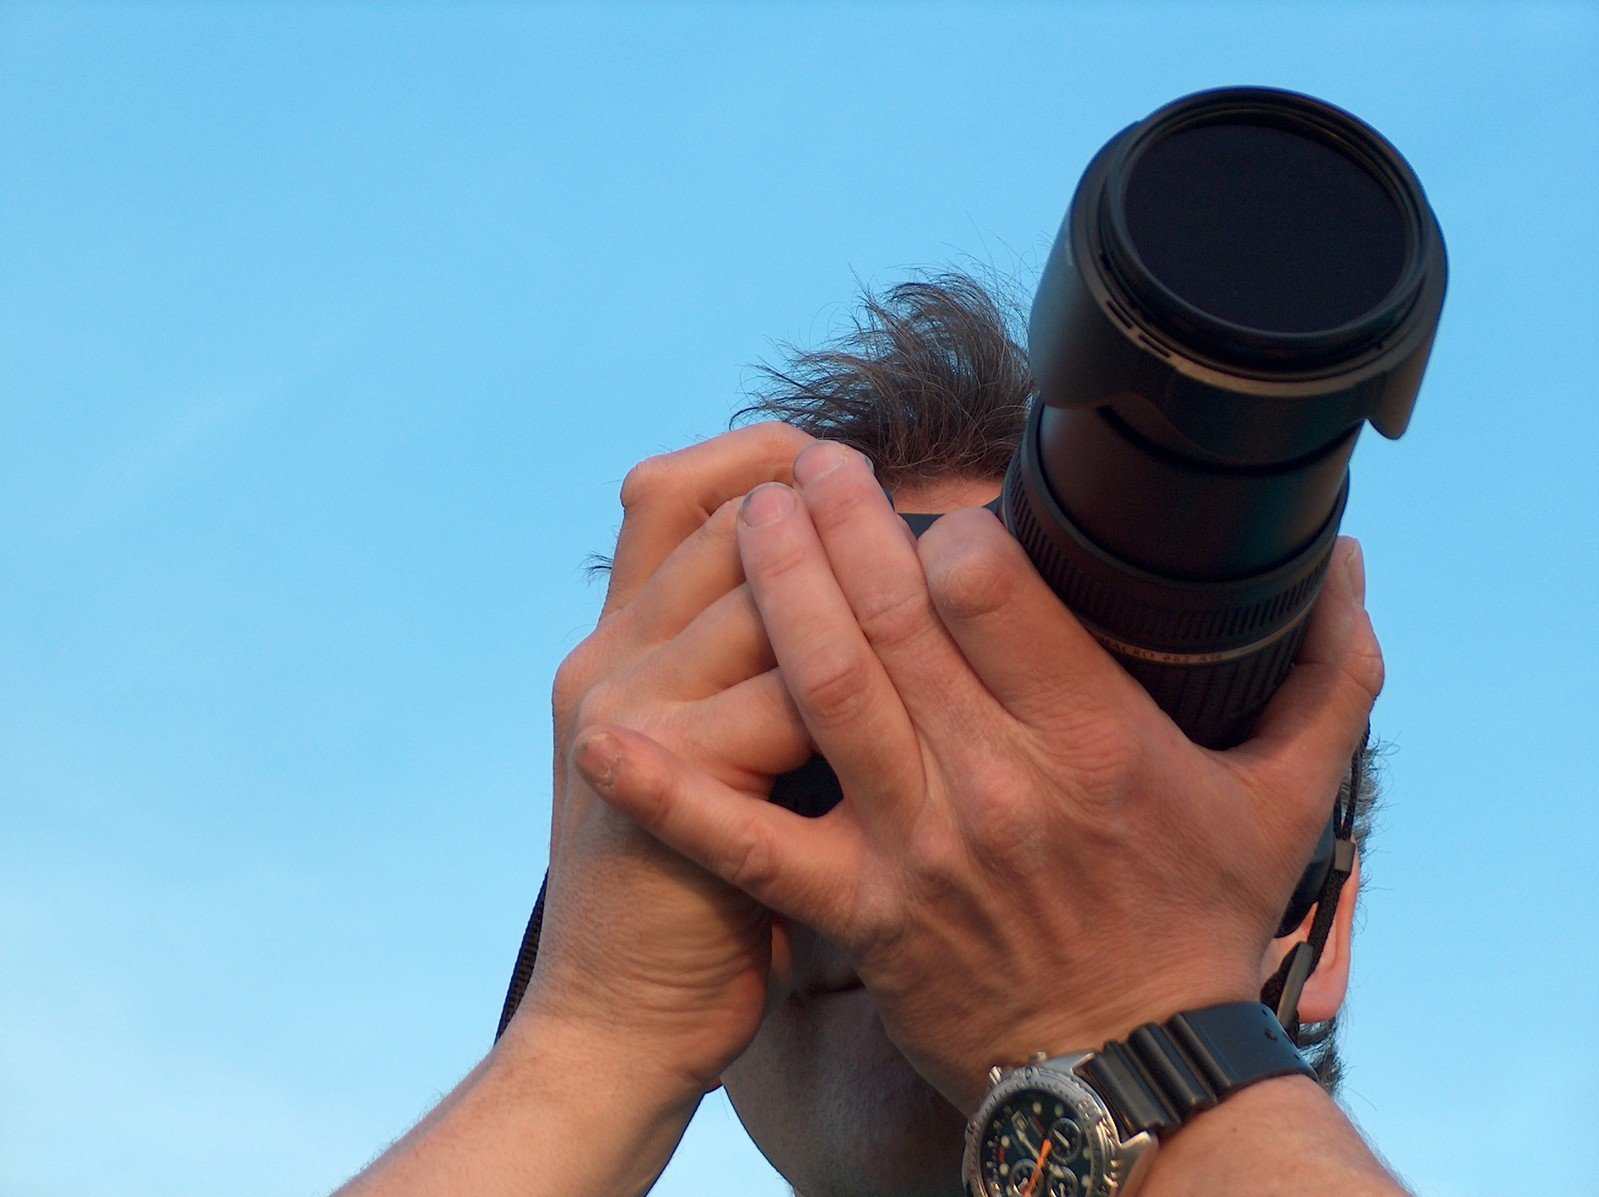 a man's hands using an outdoor binoculars